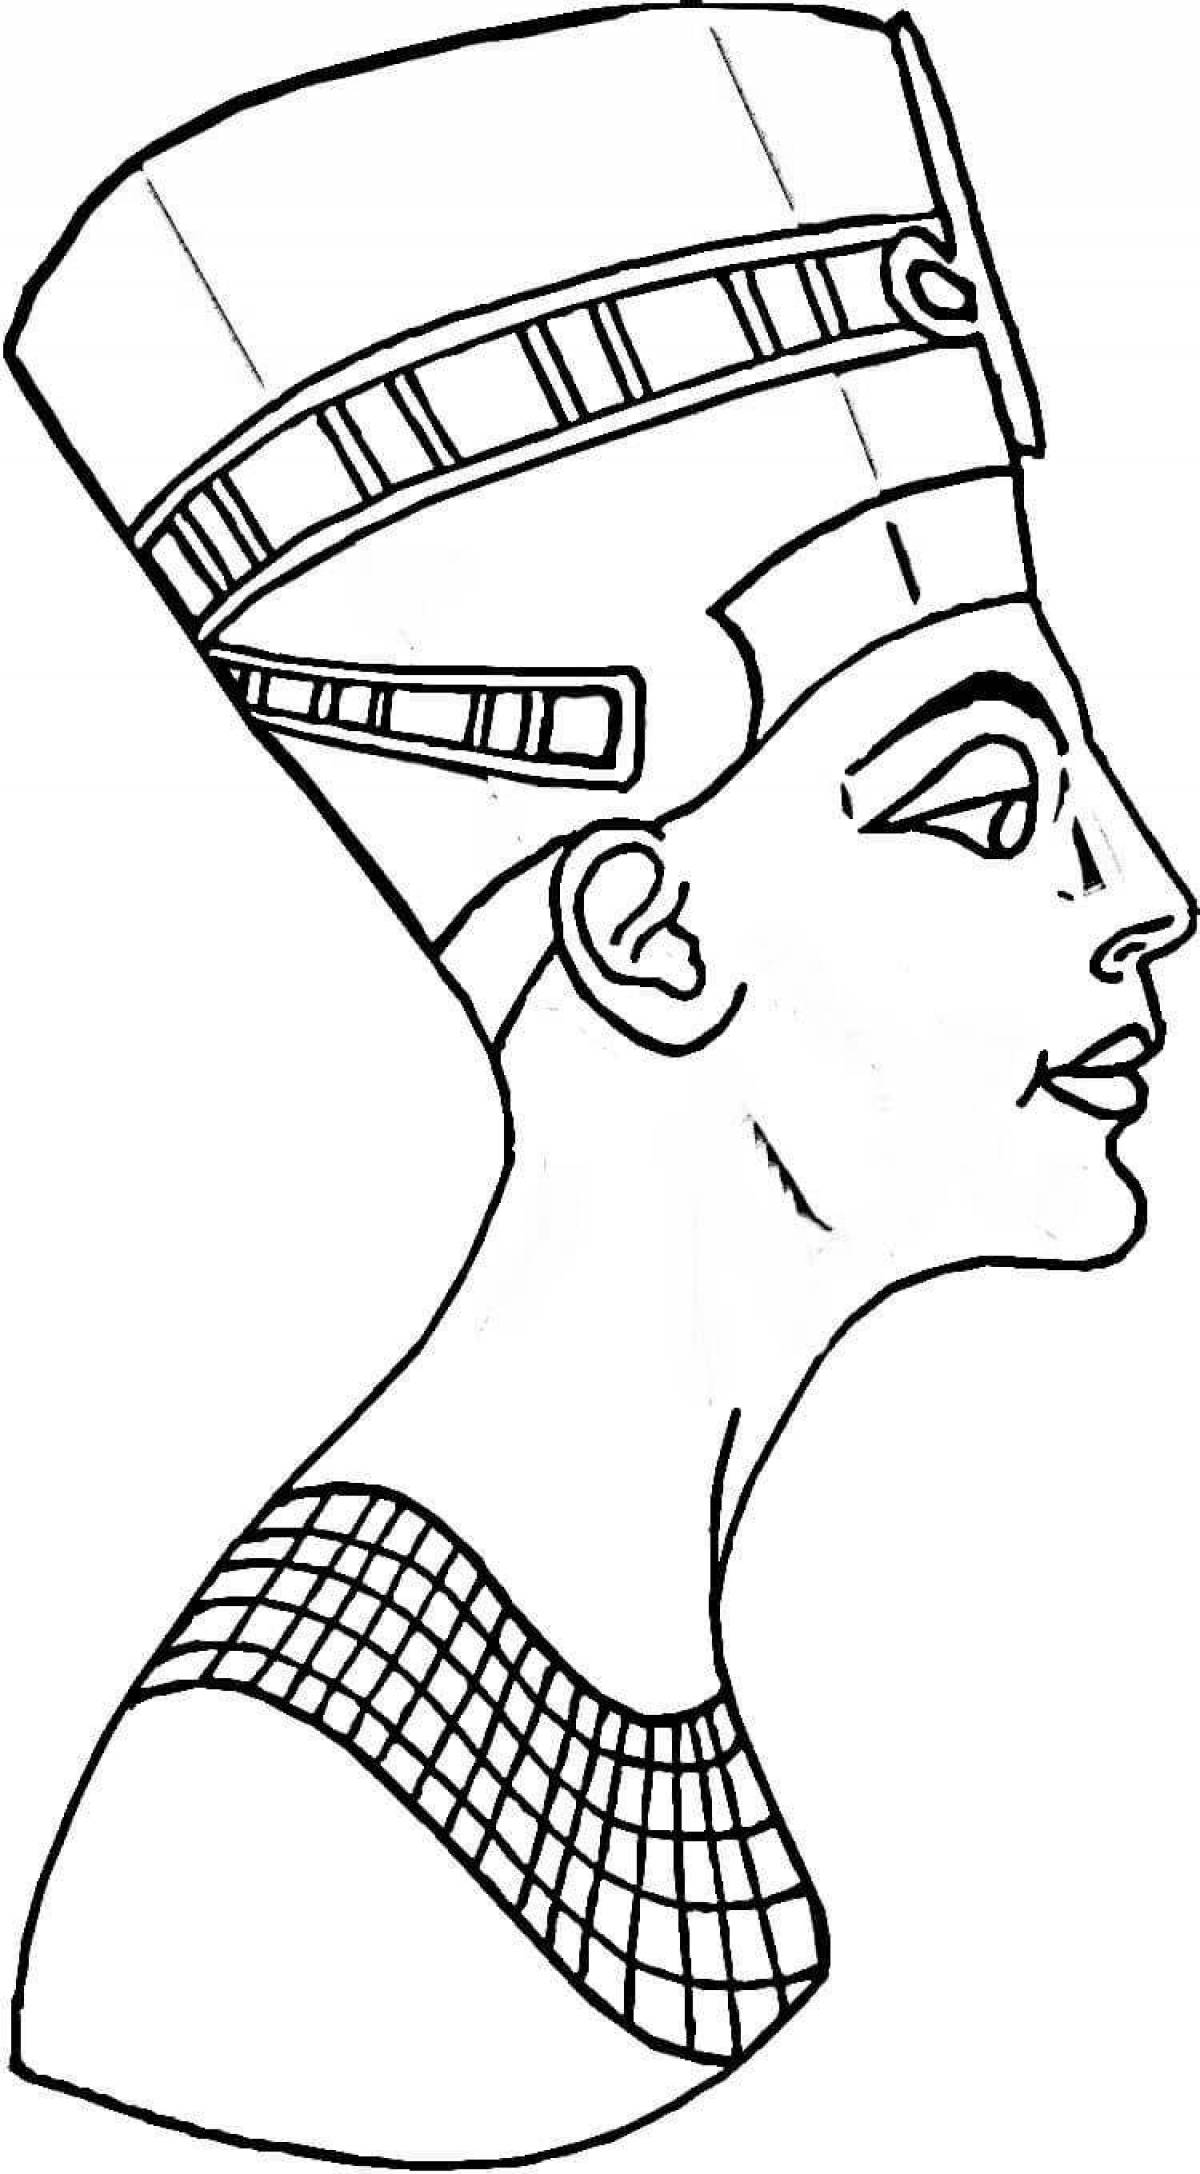 Гламурная раскраска древние египетские украшения